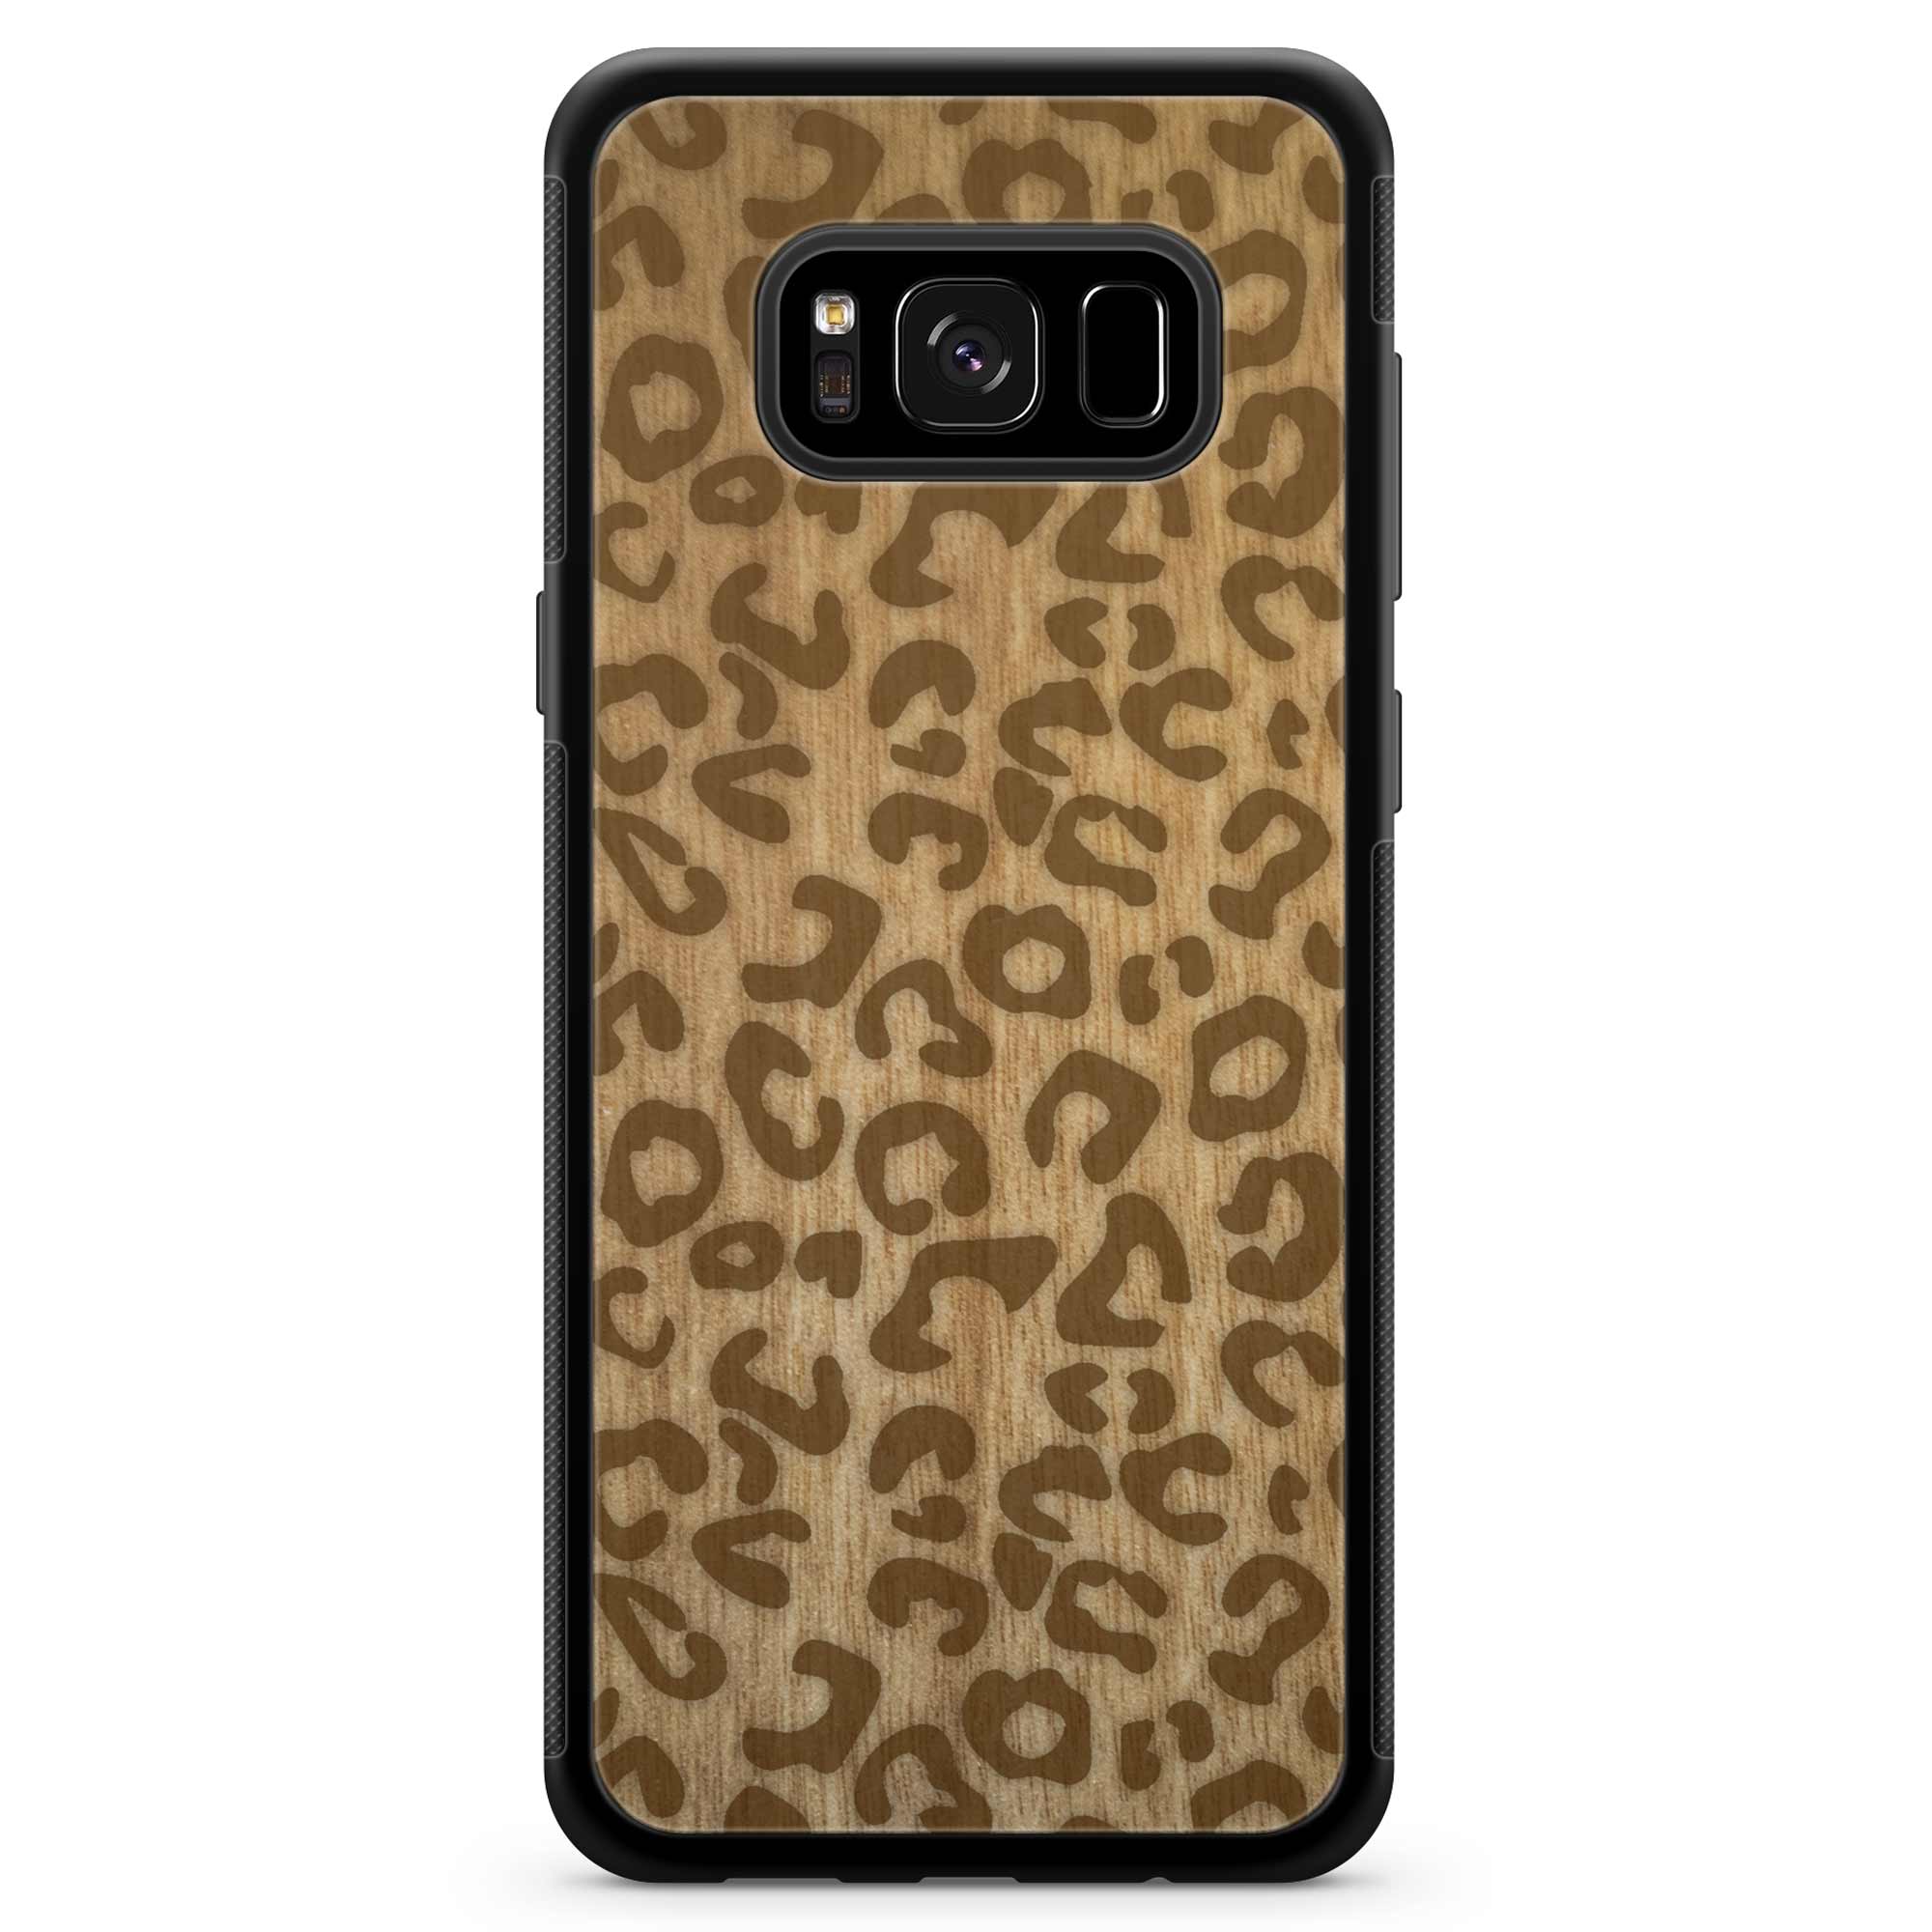 Custodia in legno per Samsung S8 con stampa ghepardo